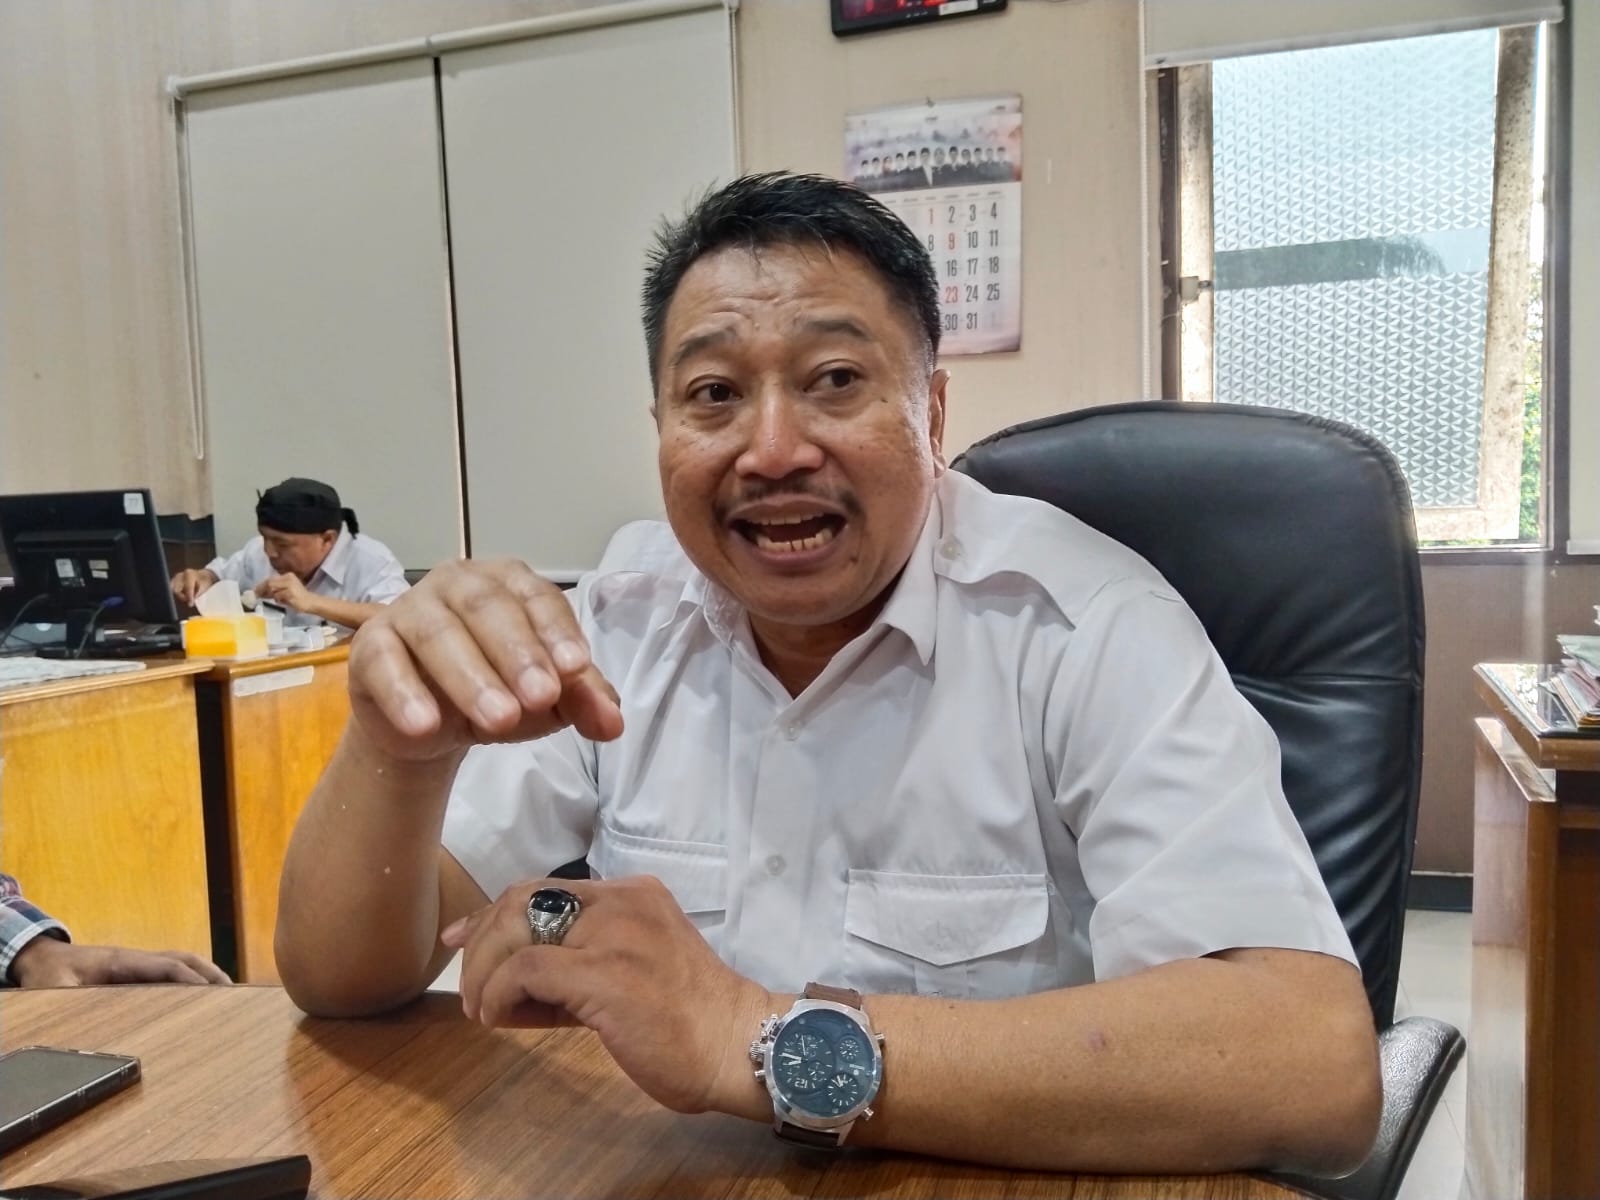 DPRD Kabupaten Malang Akan Panggil Dinas Pendidikan, Bahas Study Tour